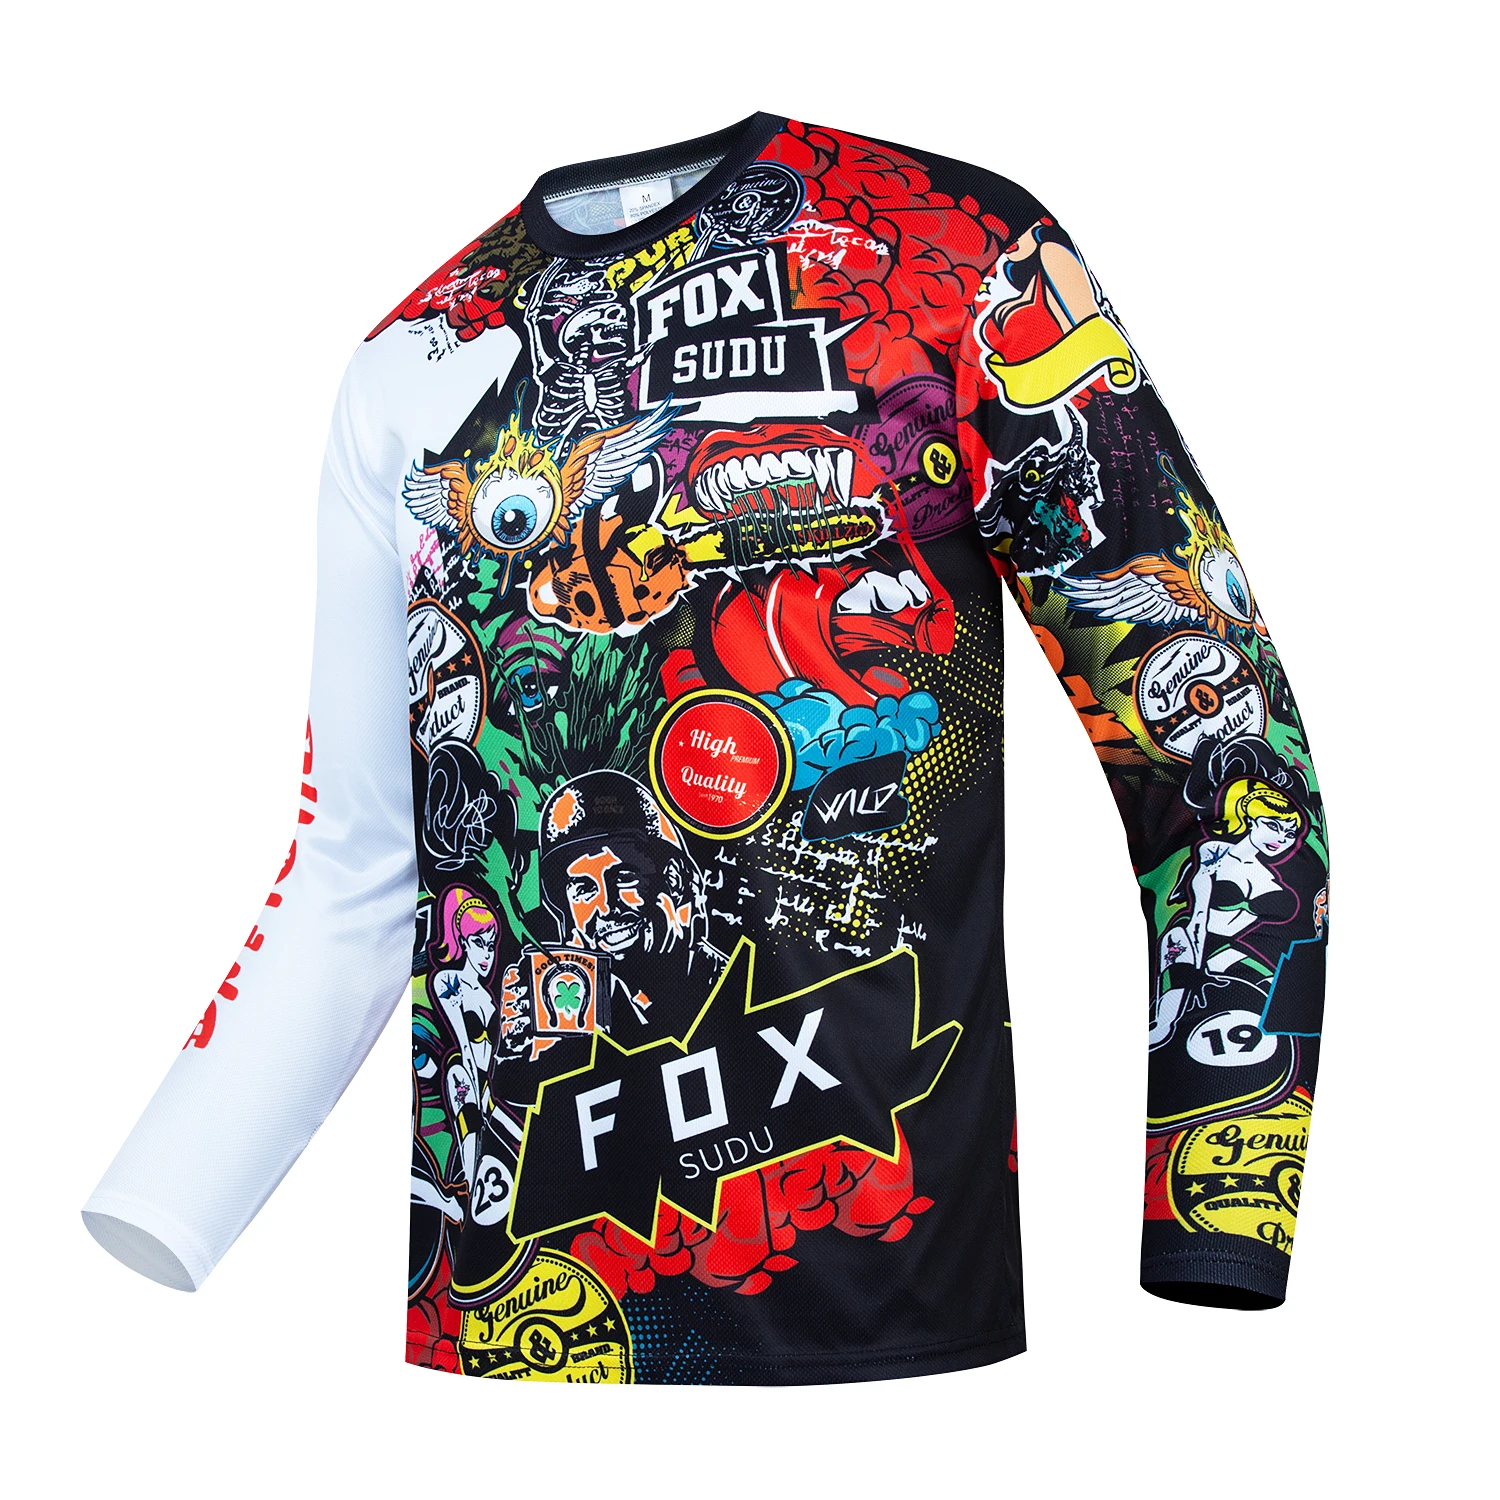 FOX SUDU 남성용 사이클링 티셔츠, 크로스 컨트리 오토바이 산악 자전거, 속도 감소 세트, 긴팔, 빠른 건조 사이클링 세트